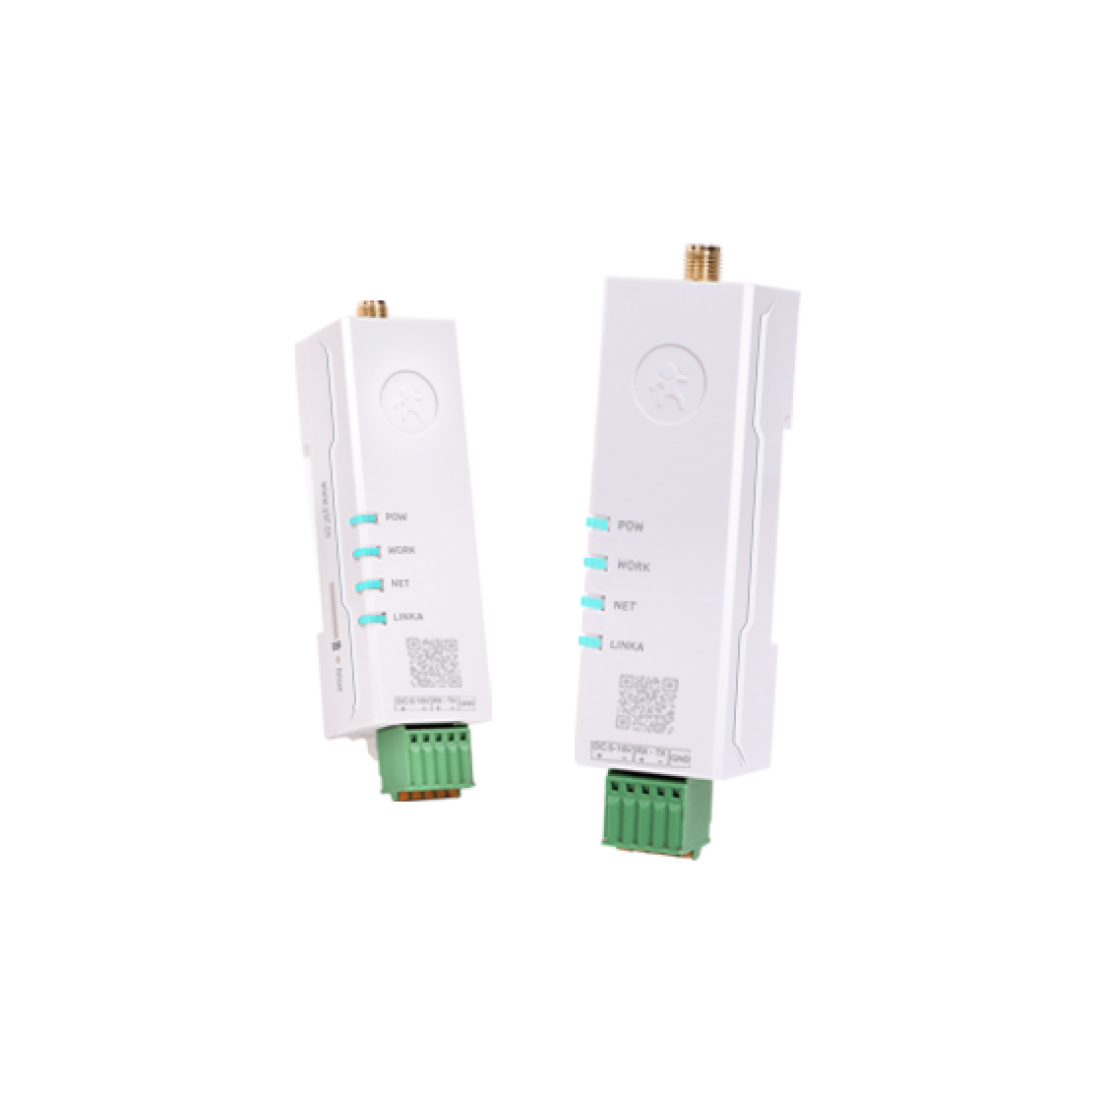 Buy USR-DR154 RS485 to 4G LTE CAT-1 Din Rail 4G LTE modem Online in